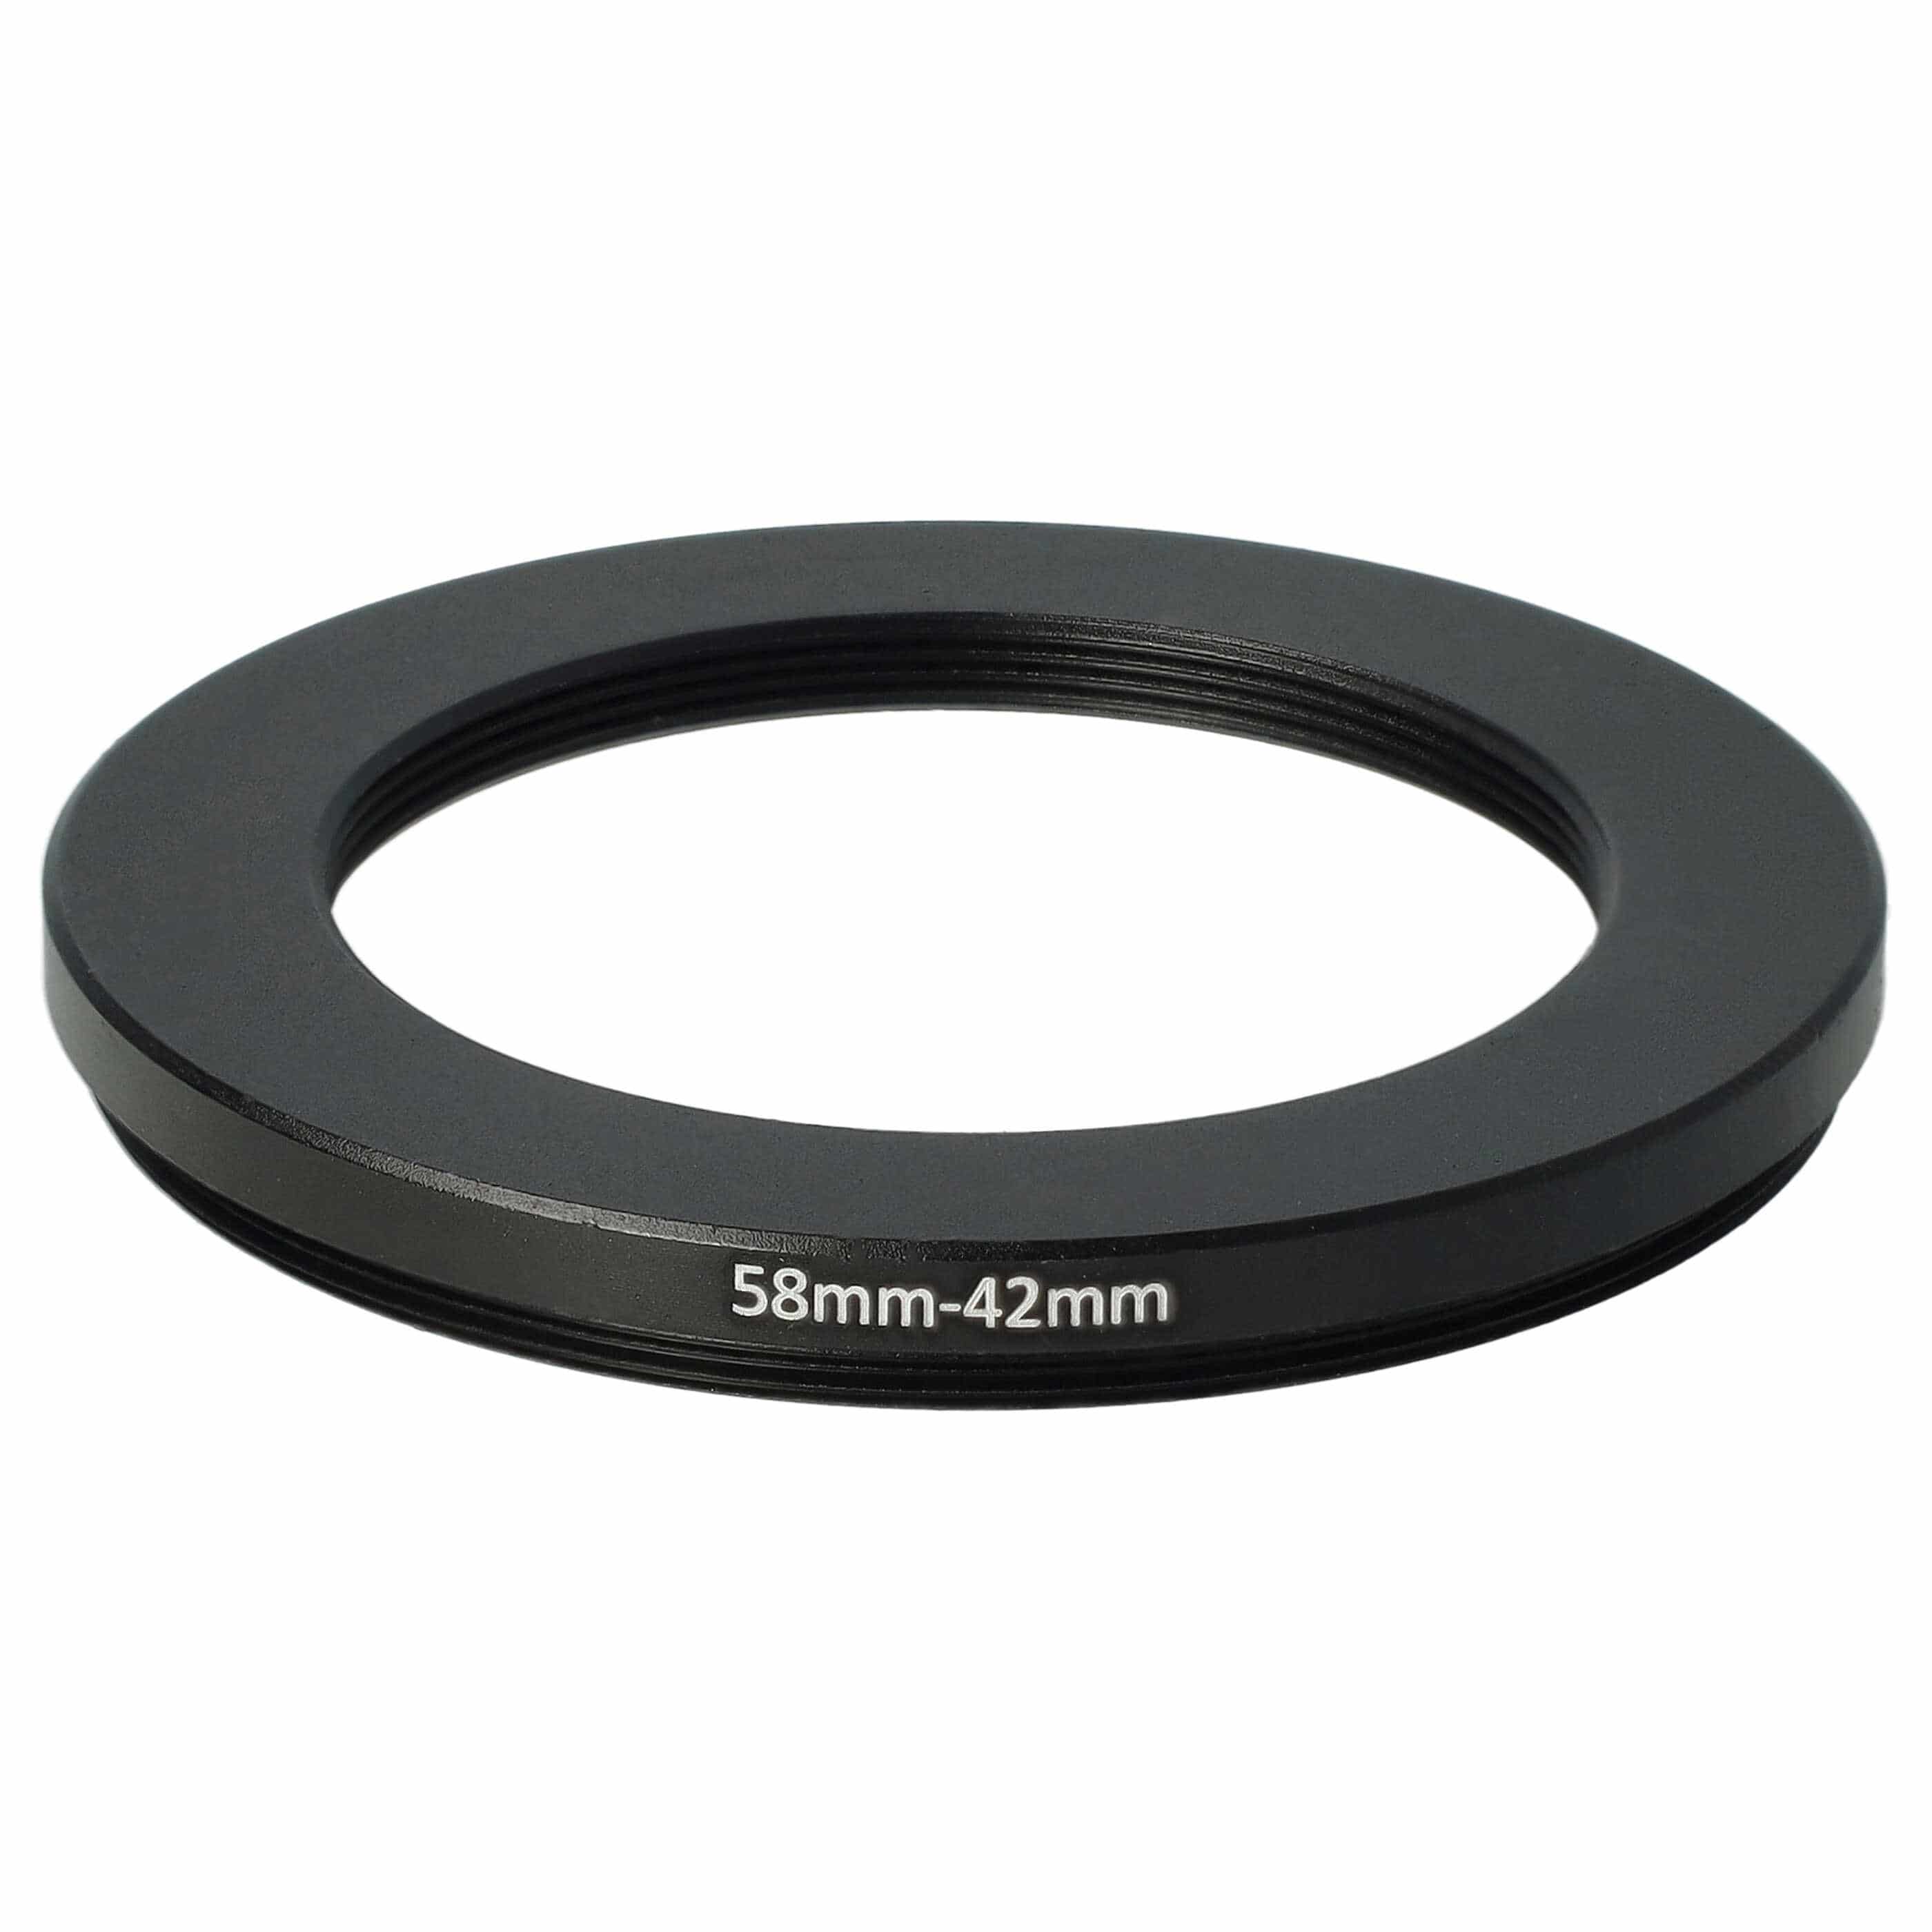 Anello adattatore step-down da 58 mm a 42 mm per obiettivo fotocamera - Adattatore filtro, metallo, nero